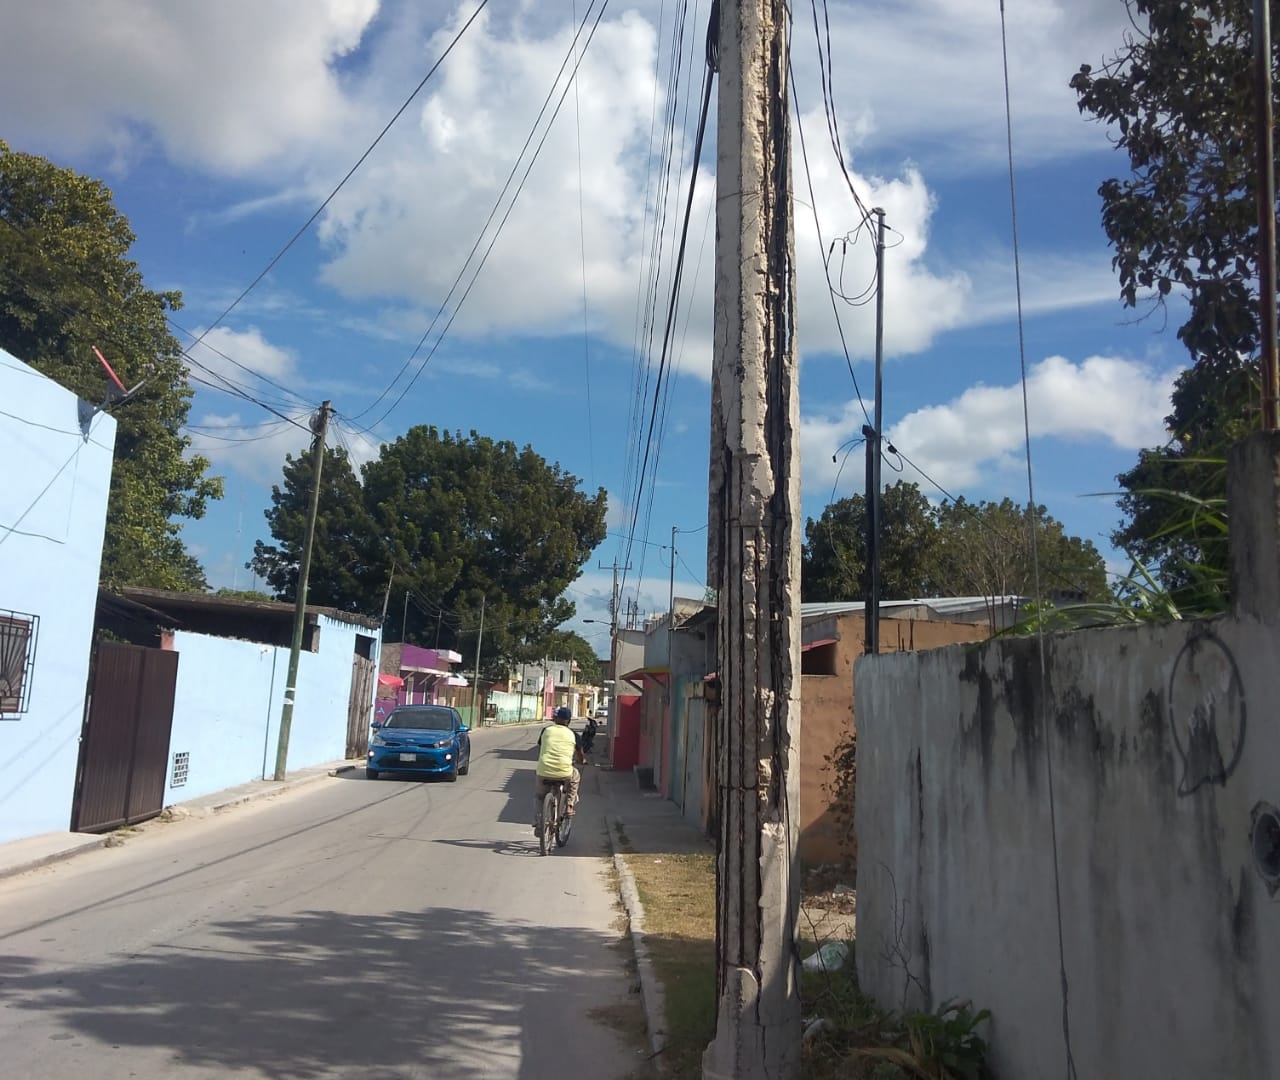 Pobladores de sabancuy piden a la CFE cambiar postes de luz en malas condiciones